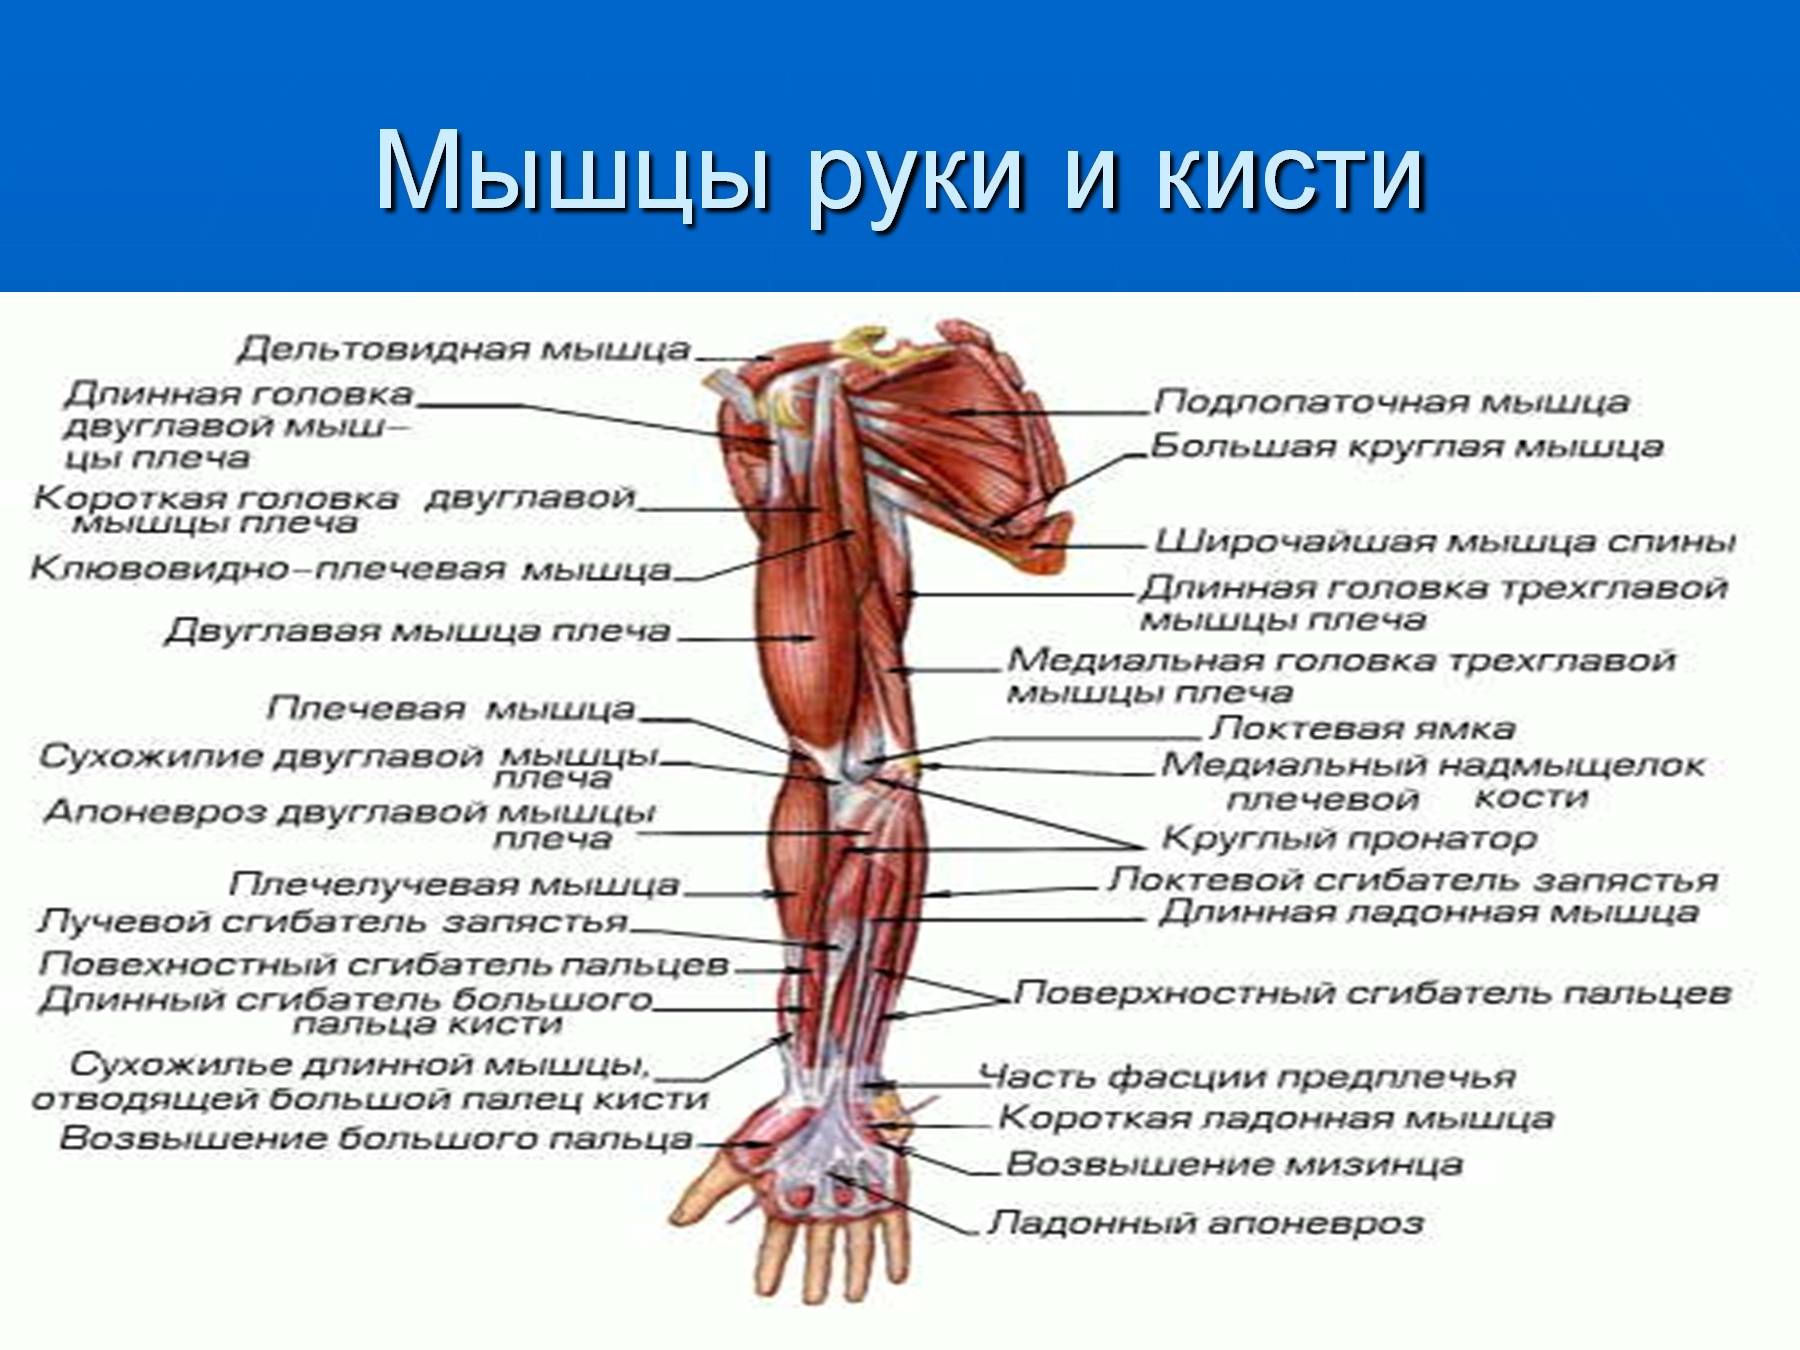 Рука человека название. Мышцы руки анатомия человека. Мышца руки: название мышц, функция. Мышцы руки и плеча схема. Мужци рук.